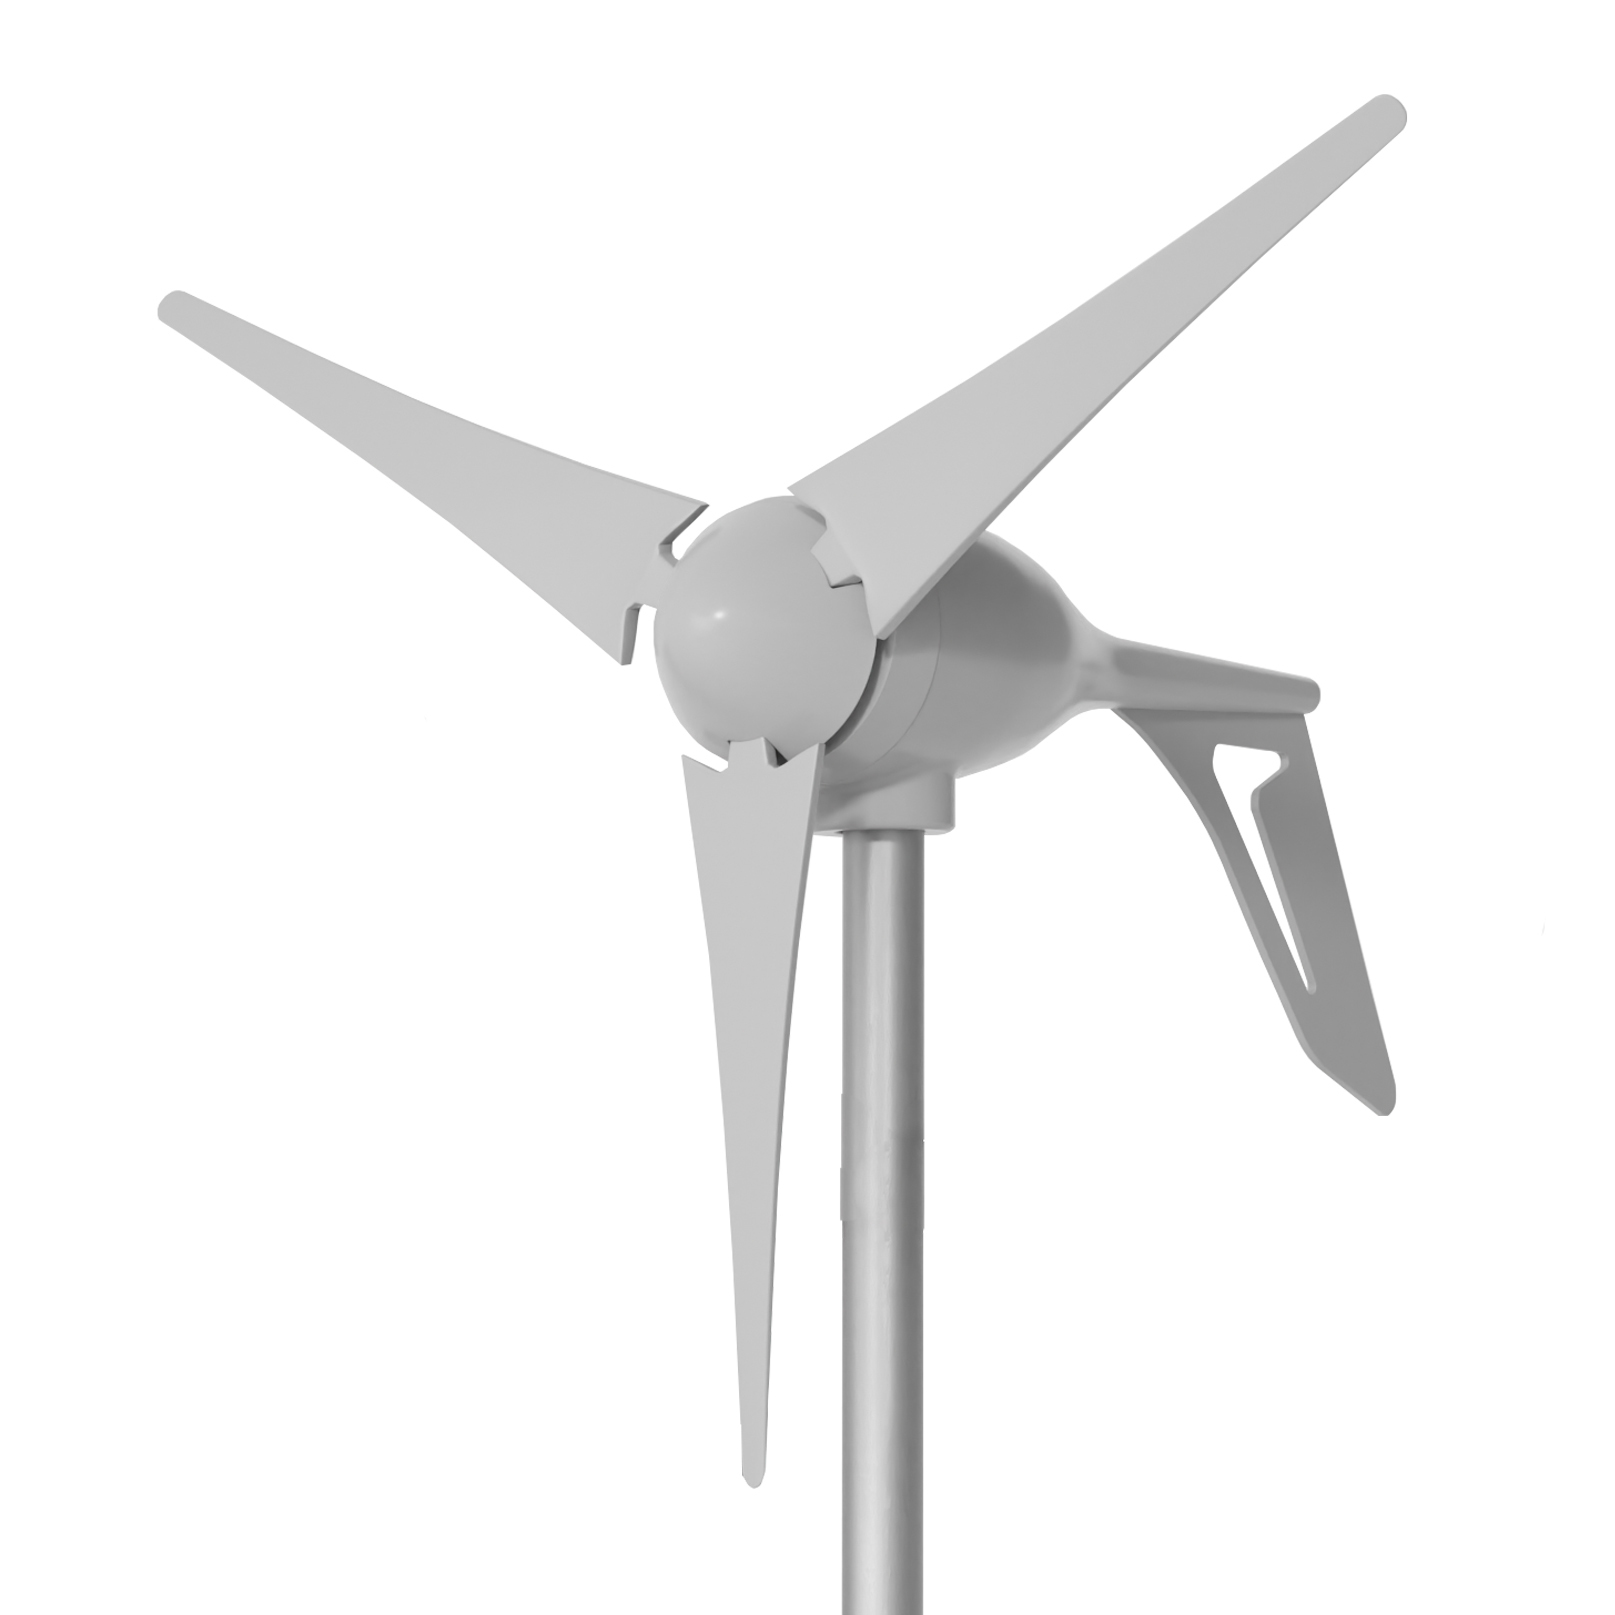 2011-09-30 Самодельный ветряк с аксиальным генератором на неодимовых магнитах. Часть 1